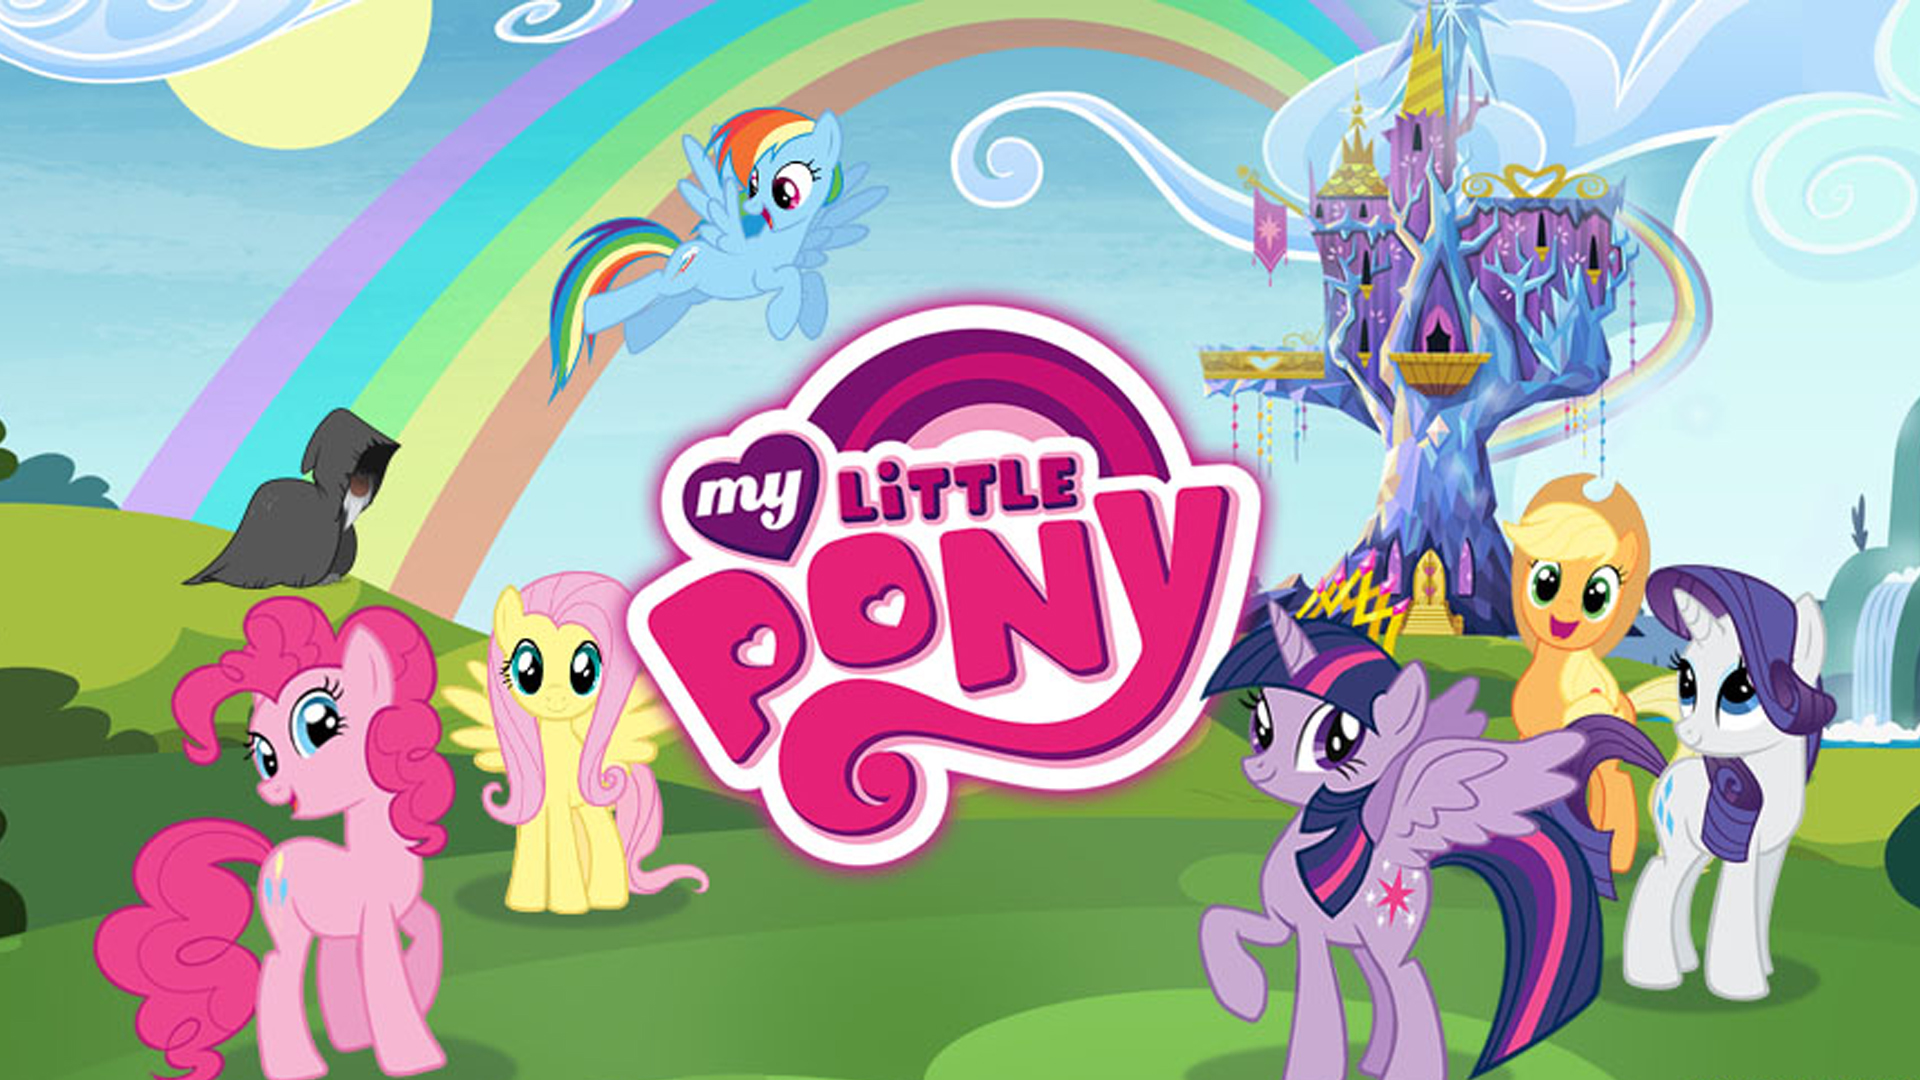 My little пони игра. Маленькая пони игра. My little Pony Friendship is Magic игра. My little Pony ИГИА. My little Pony 2012.